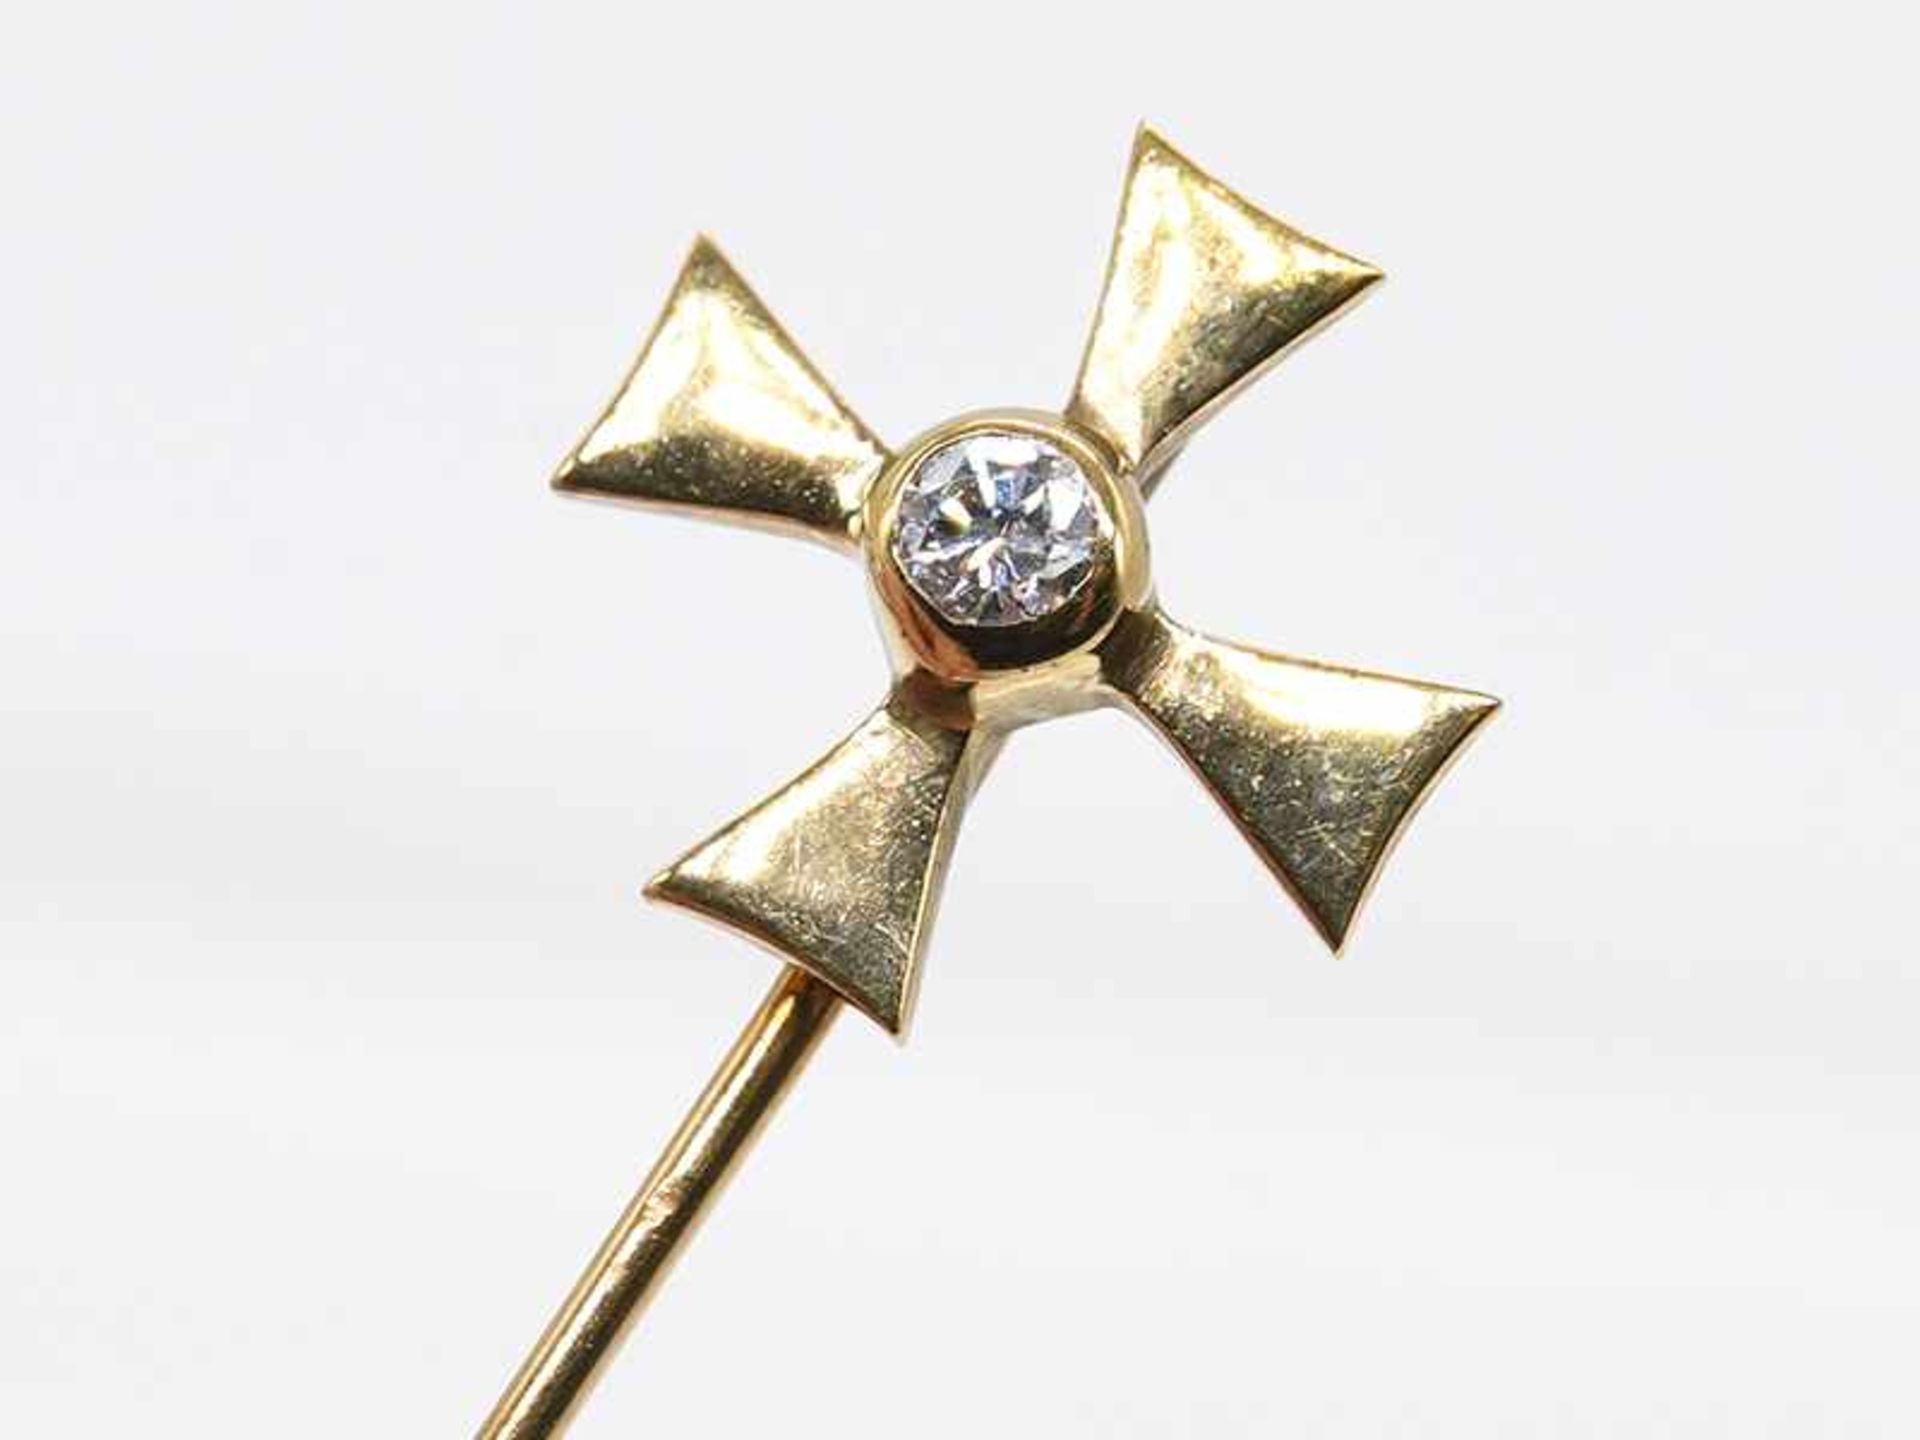 Krawattennadel "Malteser-Kreuz" mit kleinem Altschliff-Diamant ca. 0,05 ct, 80-er Jahre.